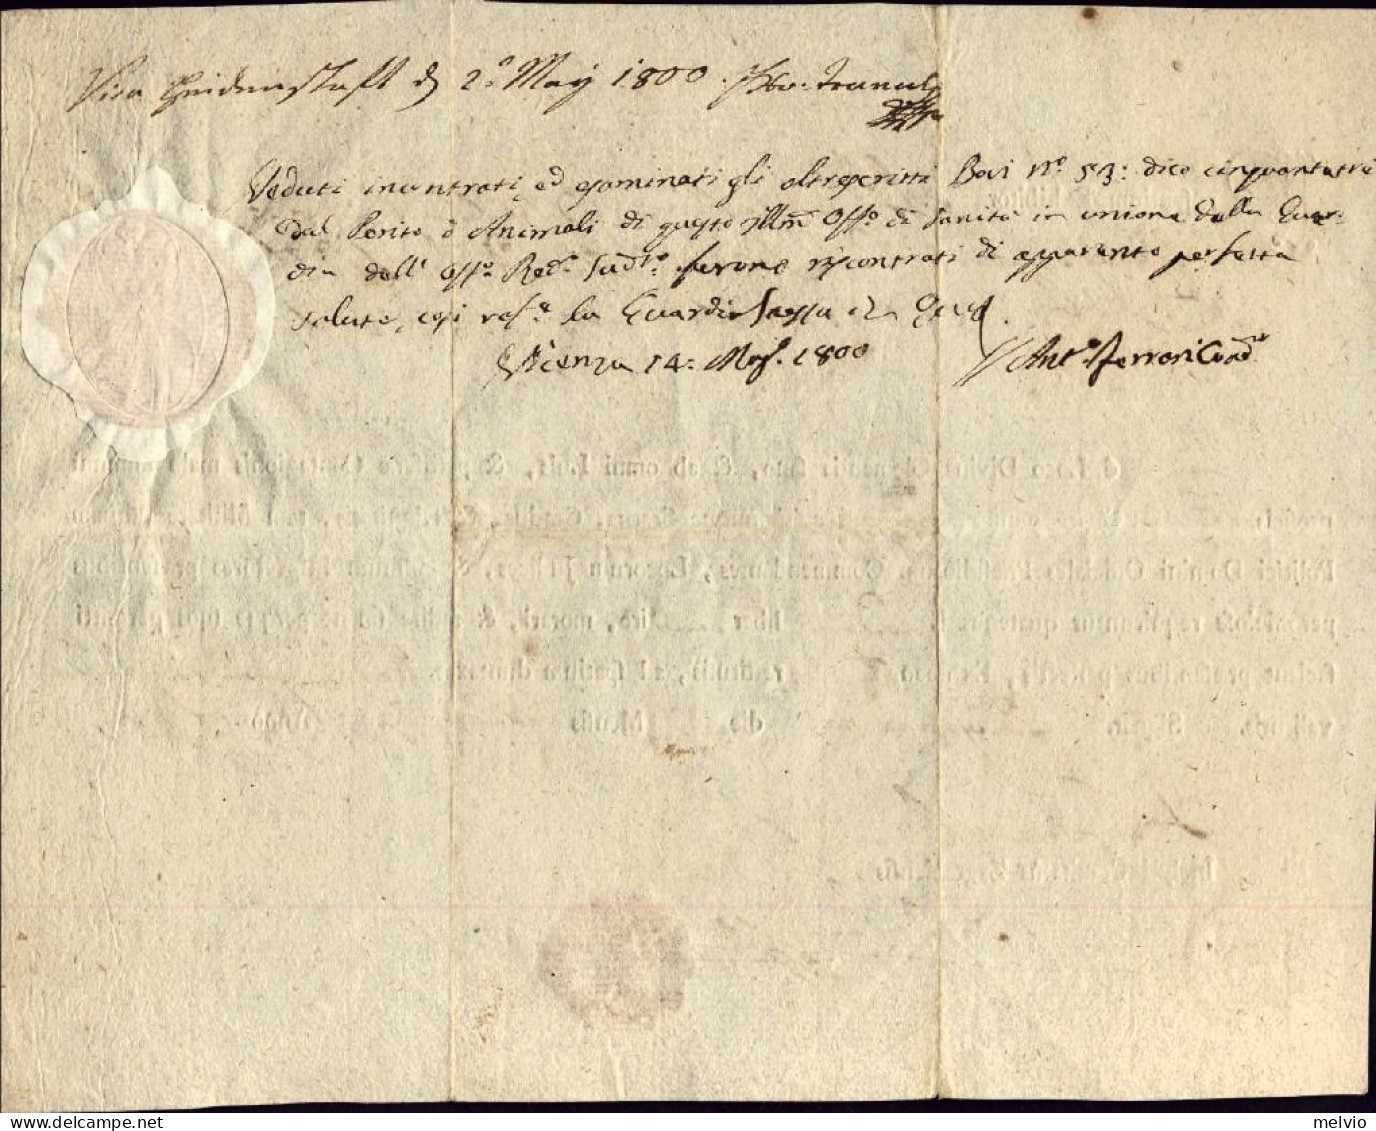 1800-Zagabria Fede Di Sanita' Rilasciata Il 27 Maggio Con In Basso Bollo In Cera - Historical Documents